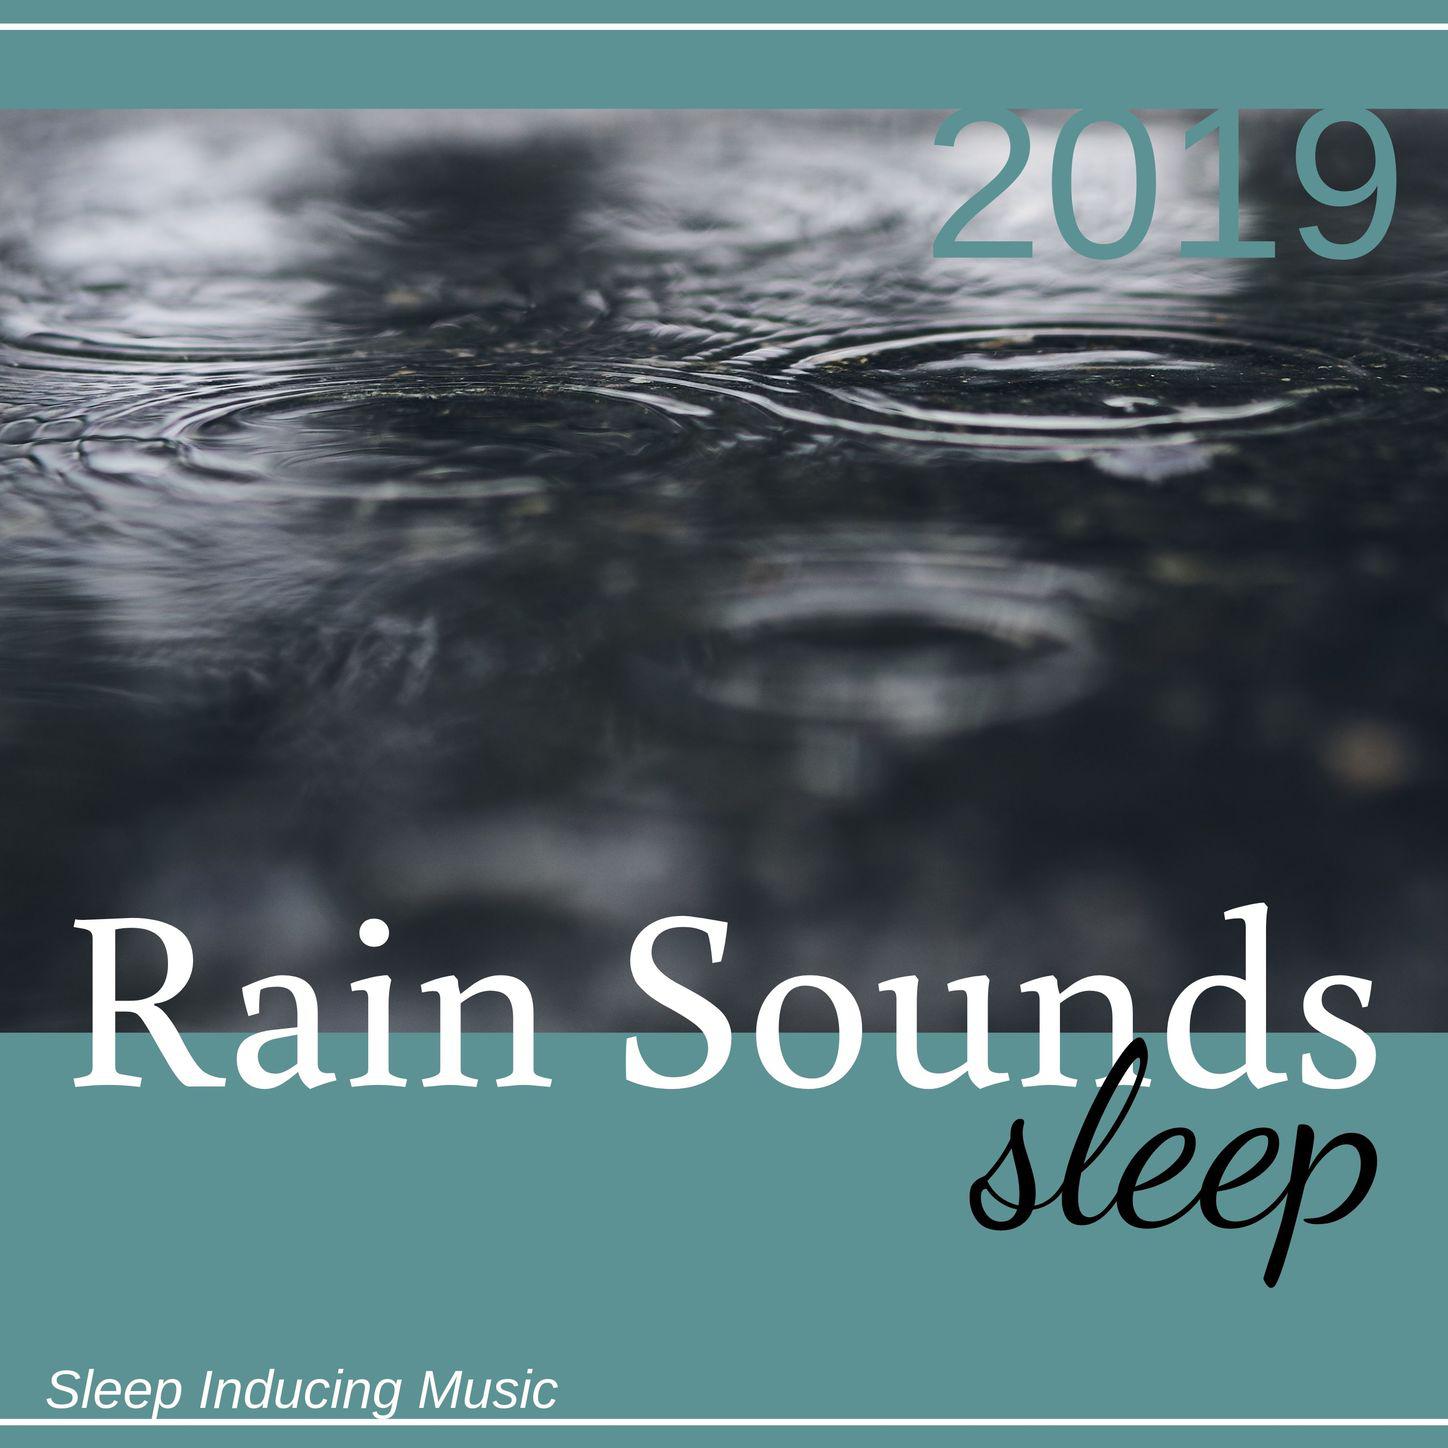 Rain Sounds Sleep 2019 - Sleep Inducing Music